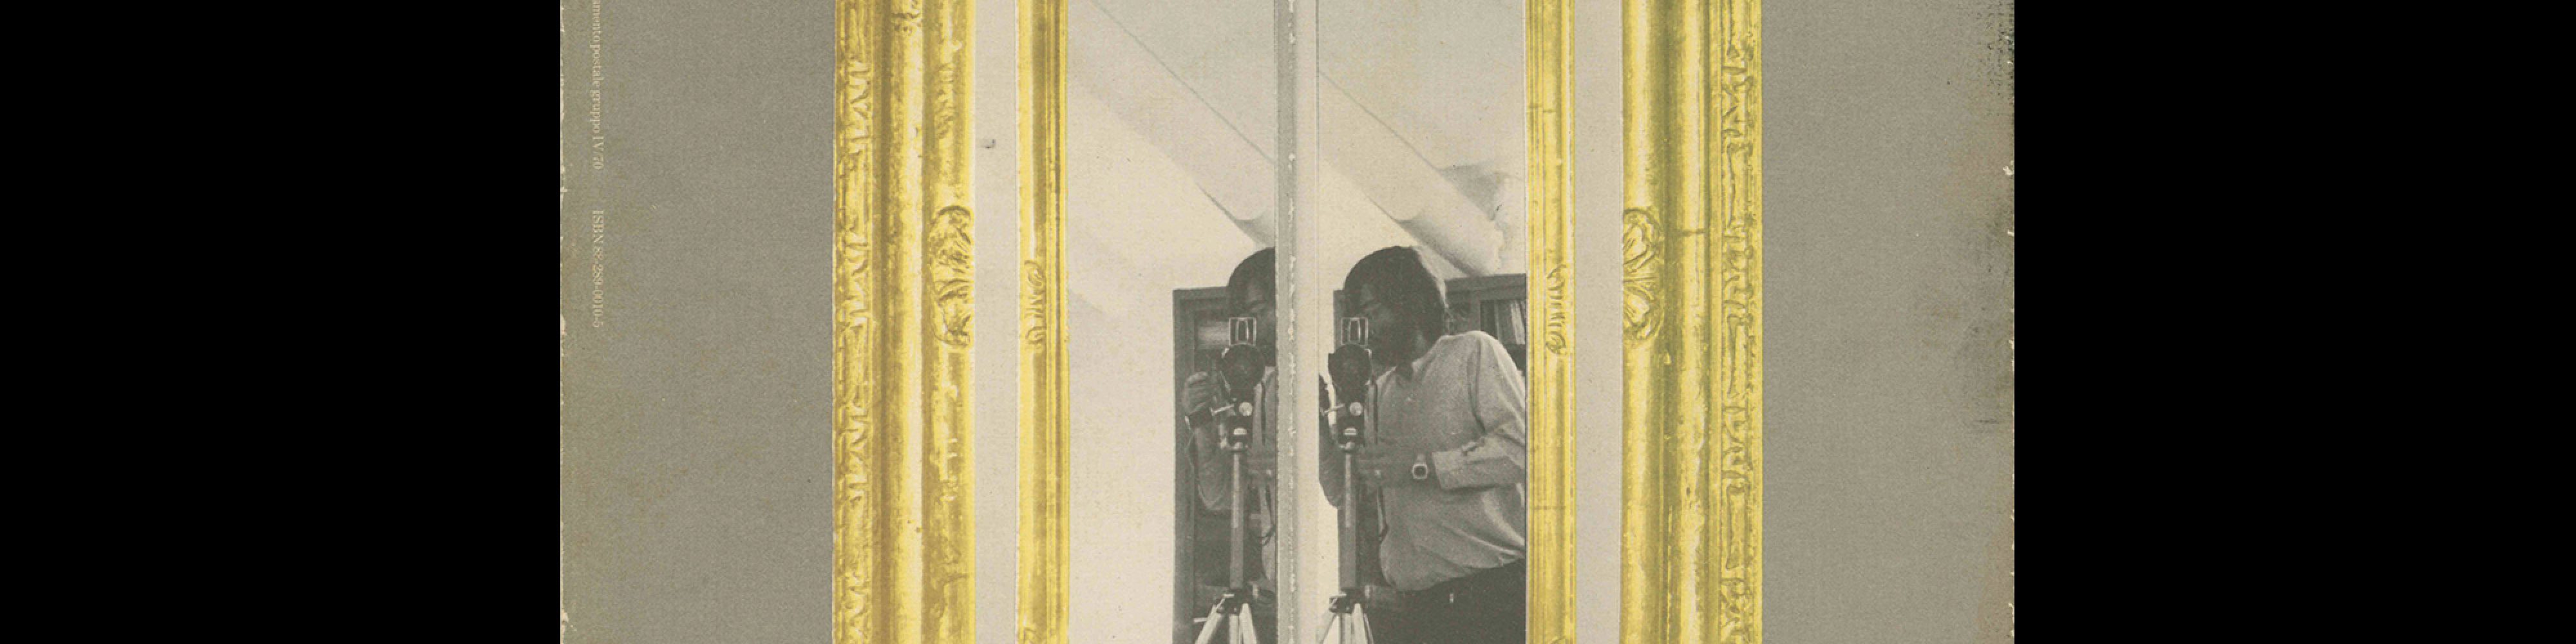 Rassegna 13, Attraverso Lo Specchio / Through the Mirror, 1983